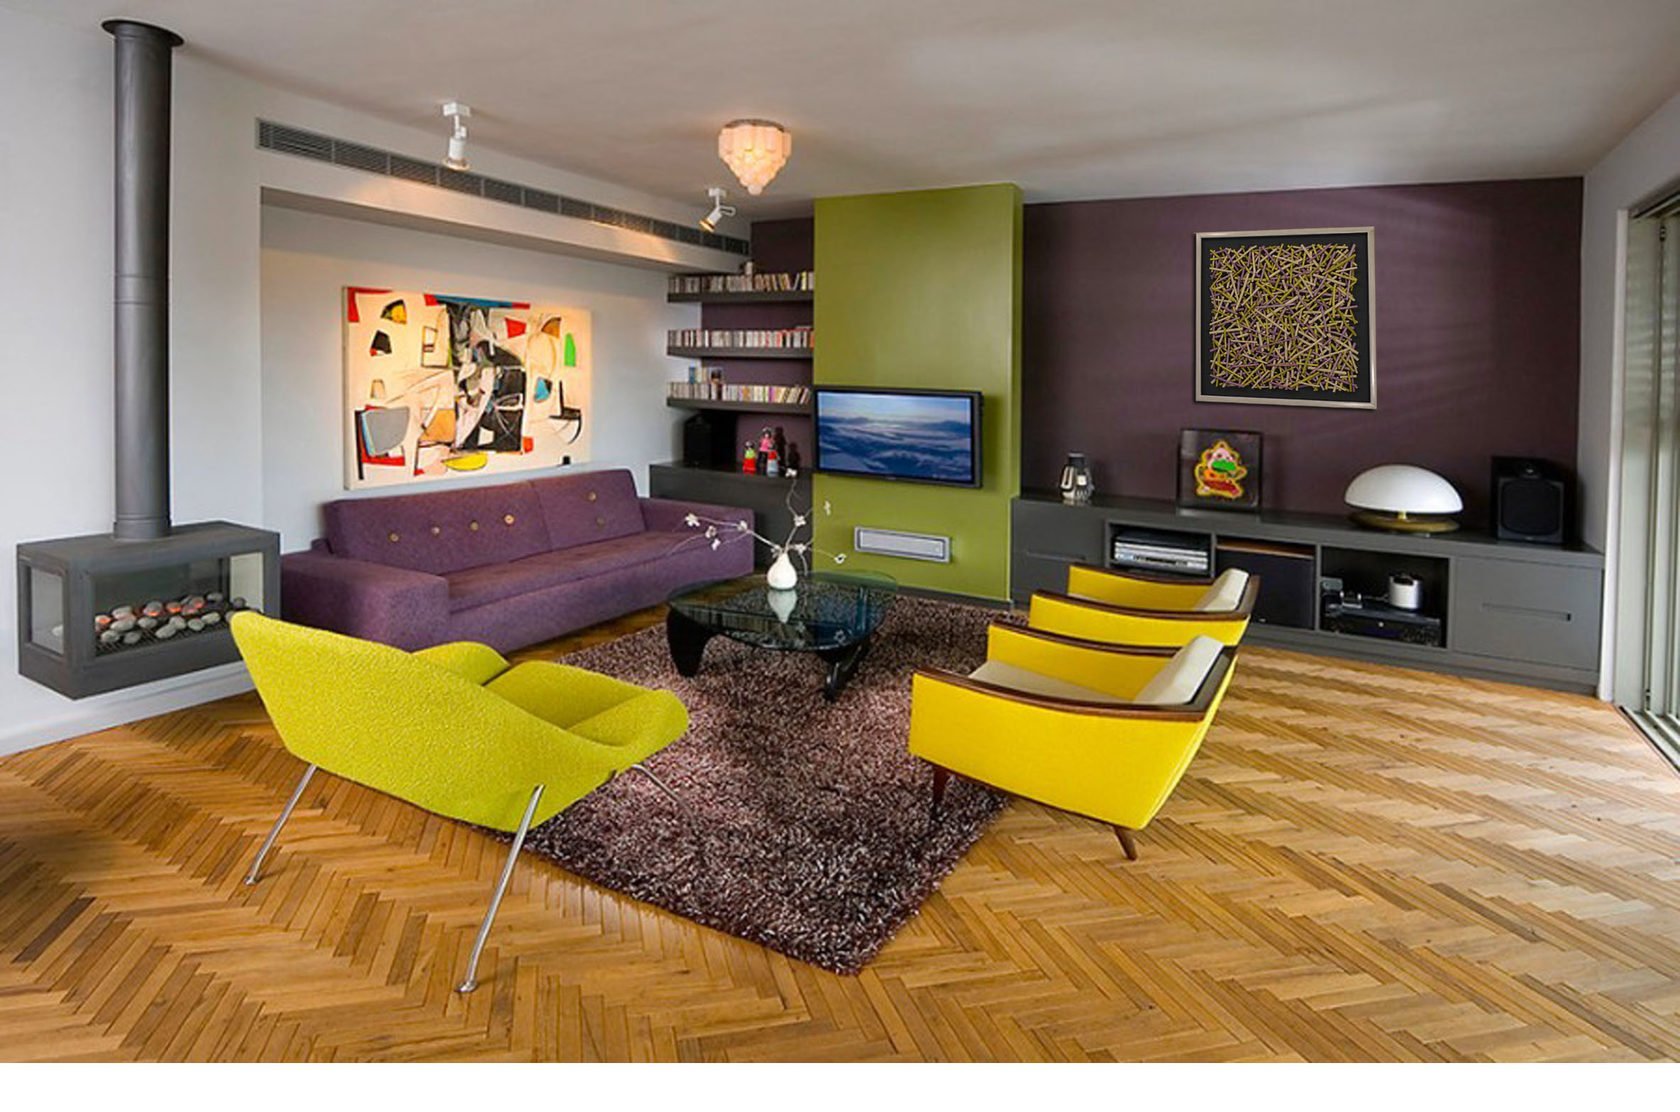 Разная мебель в разных комнатах. Желтый интерьер. Желтый в интерьере гостиной. Цветовые решения в интерьере. Гостиная в желтых тонах.